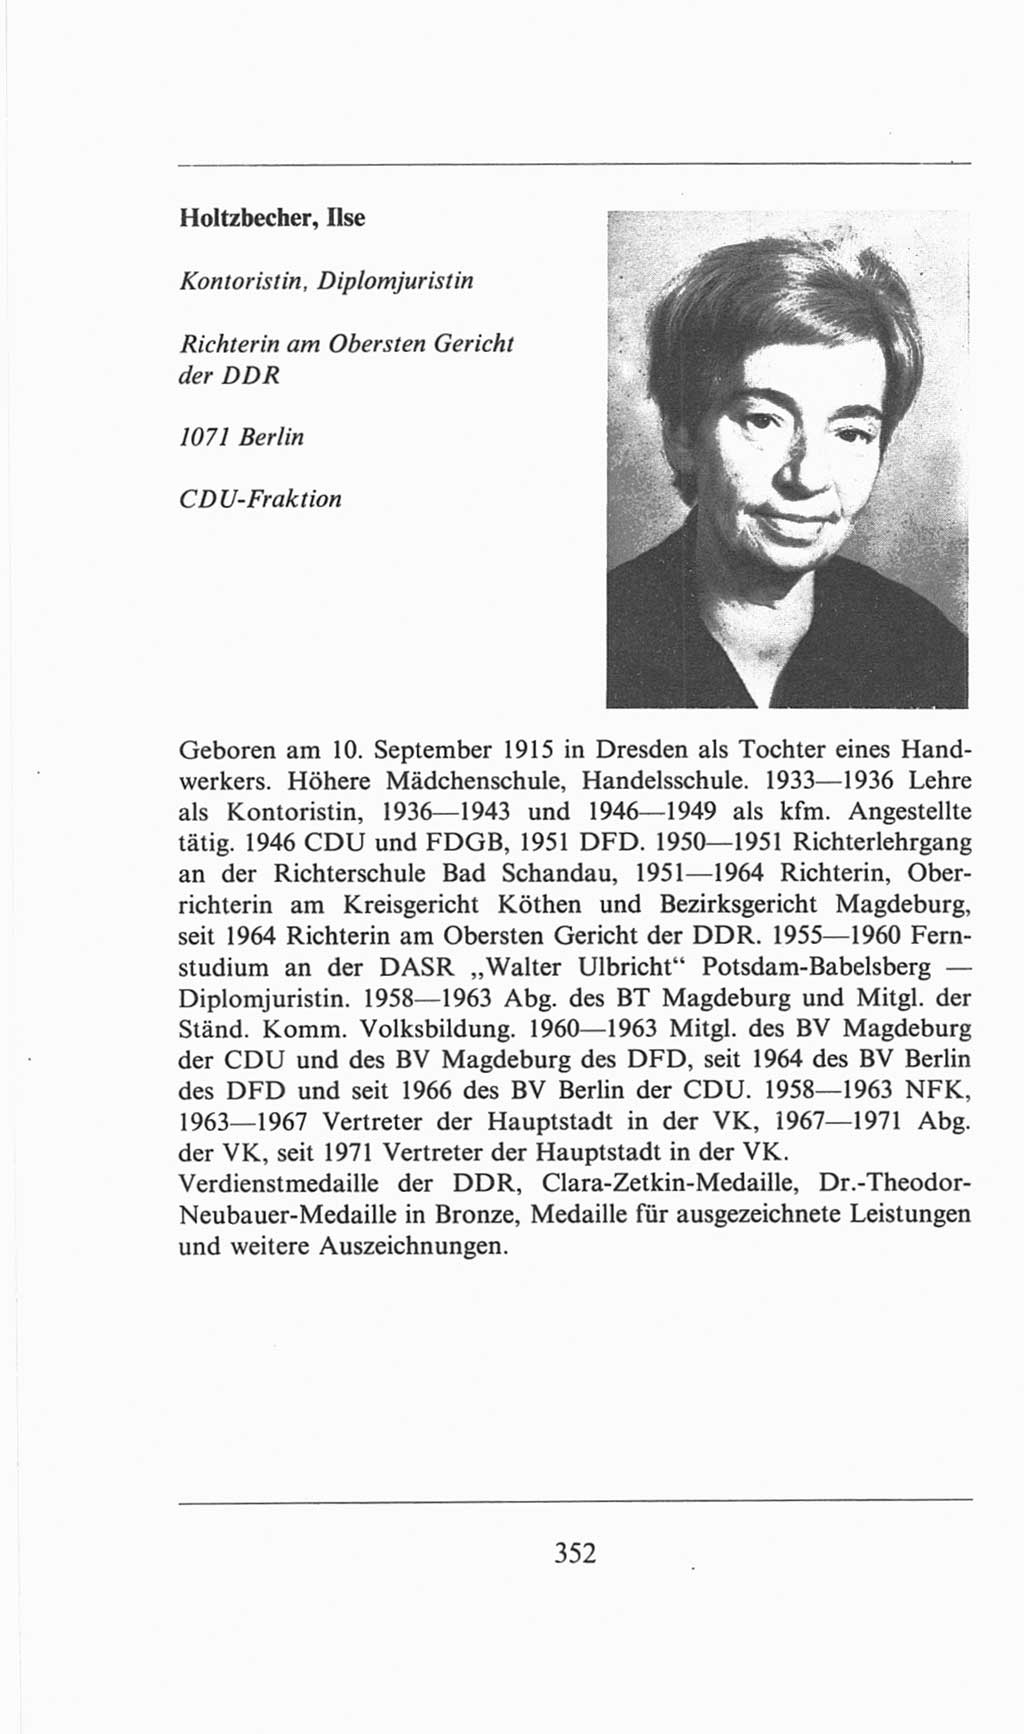 Volkskammer (VK) der Deutschen Demokratischen Republik (DDR), 6. Wahlperiode 1971-1976, Seite 352 (VK. DDR 6. WP. 1971-1976, S. 352)